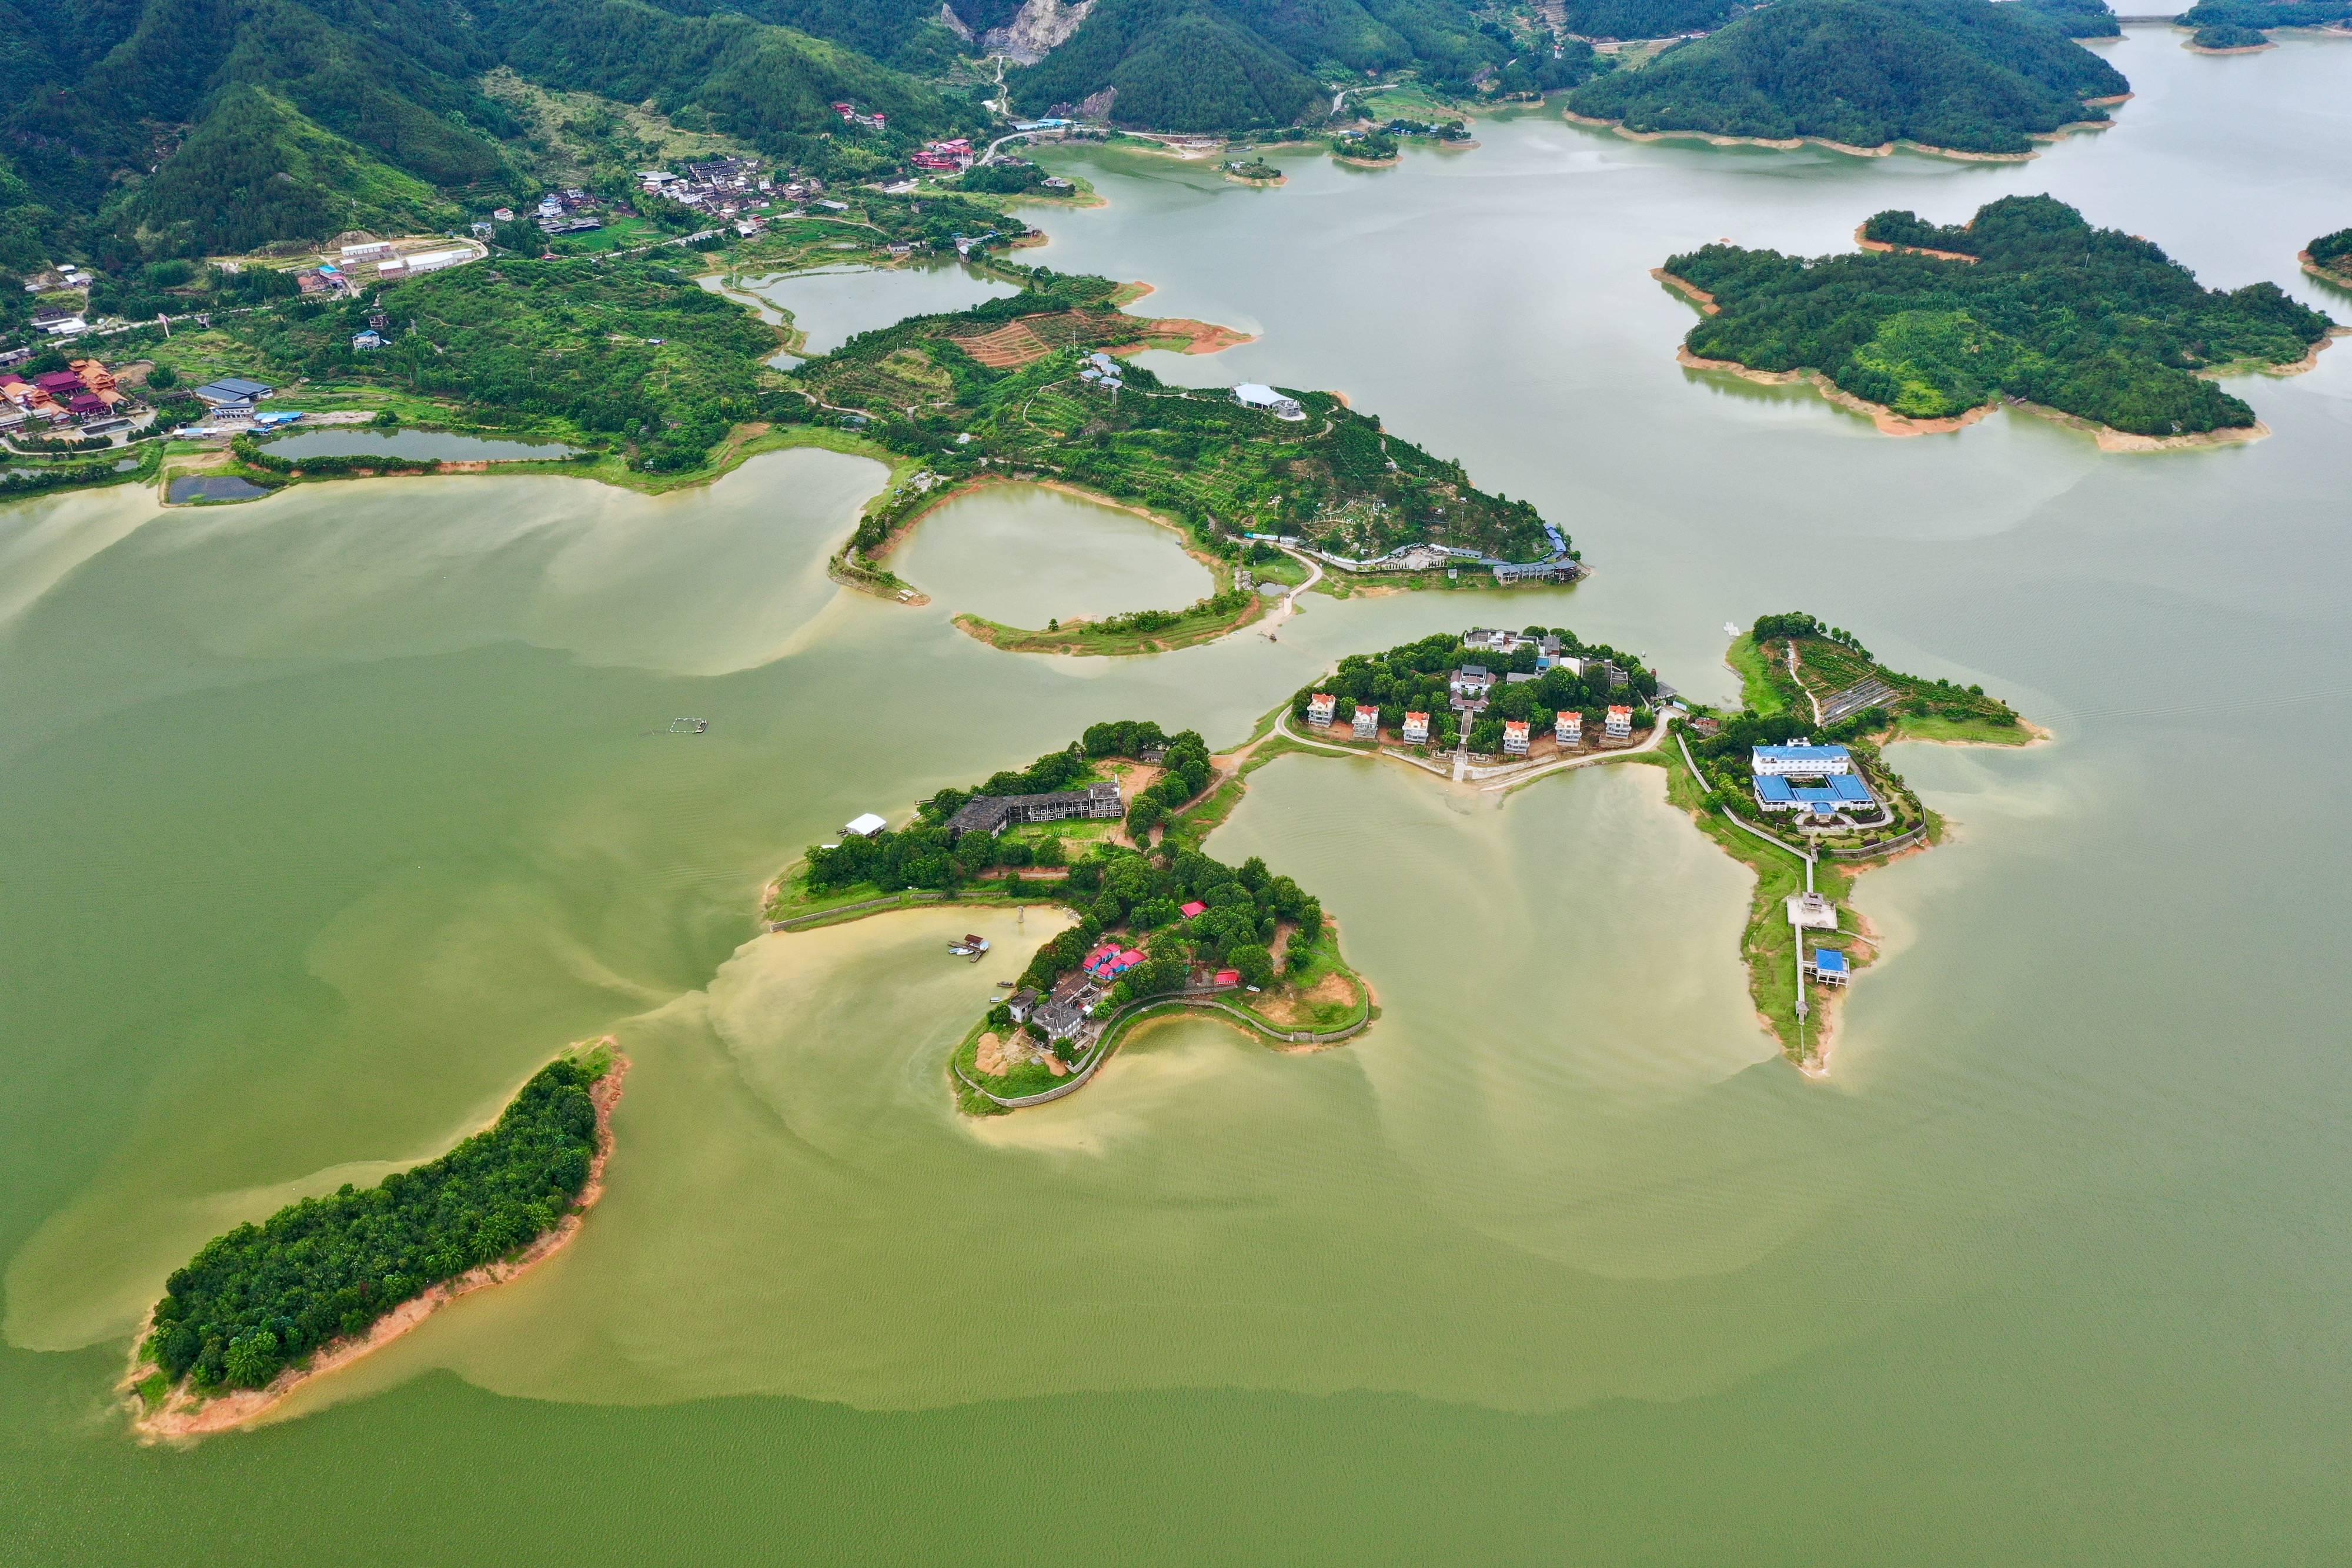 位于福建省古田县境内的翠屏湖是福建省最大的人工湖,水域面积达37